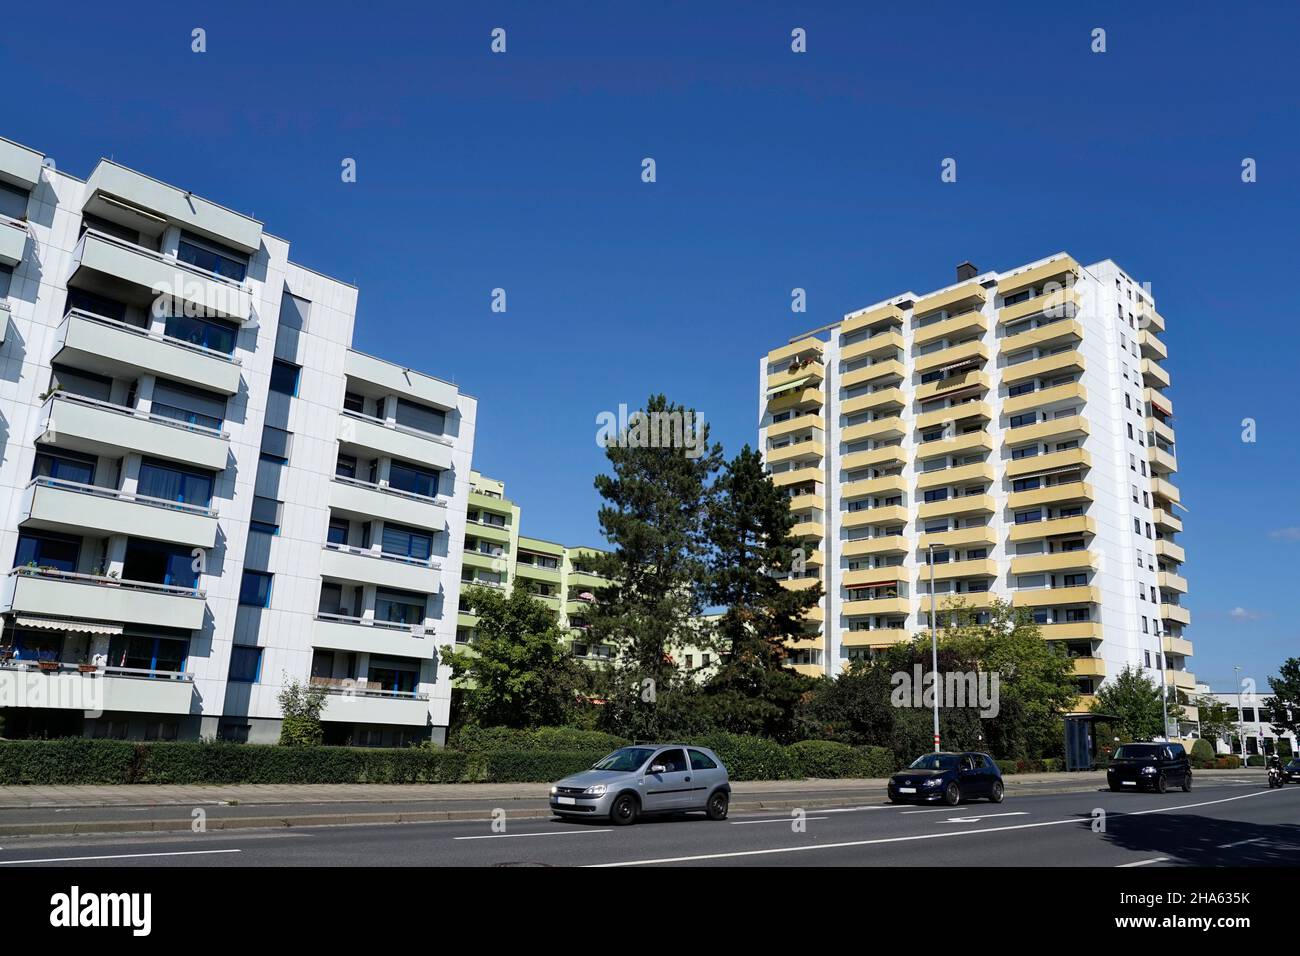 germania,baviera,alta franconia,bamberg,complesso residenziale,blocco di appartamenti,balconi gialli,strada Foto Stock